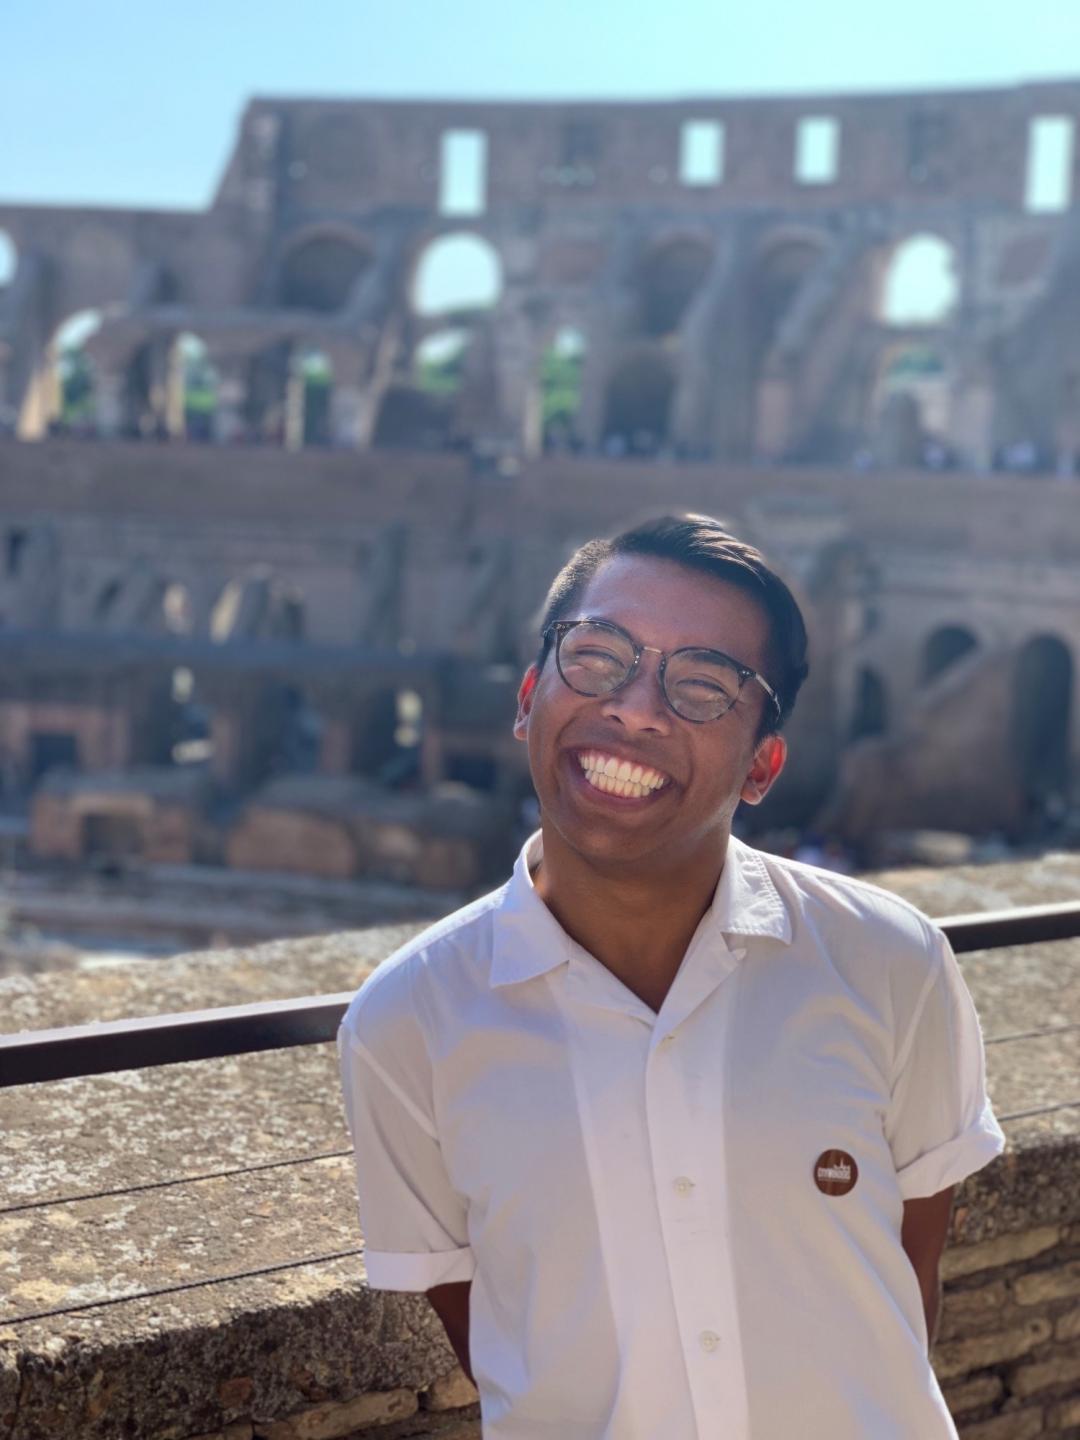 Photo of Alfonso Ralph Mendoza in the Colosseum